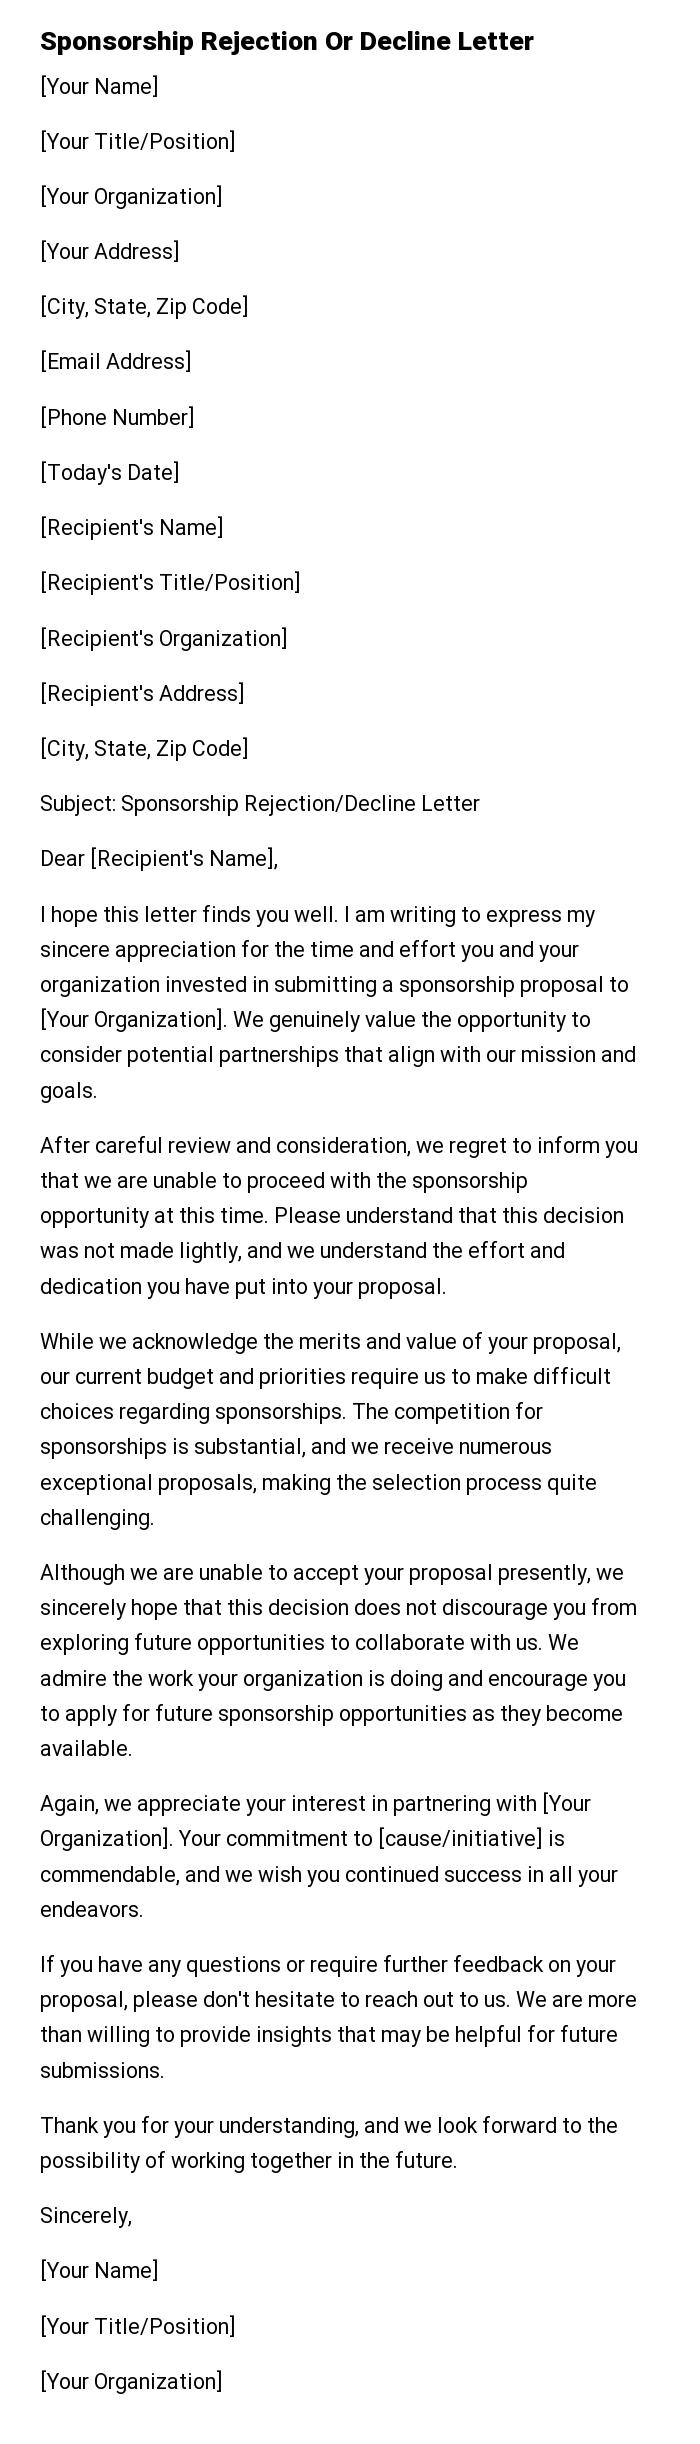 Sponsorship Rejection Or Decline Letter